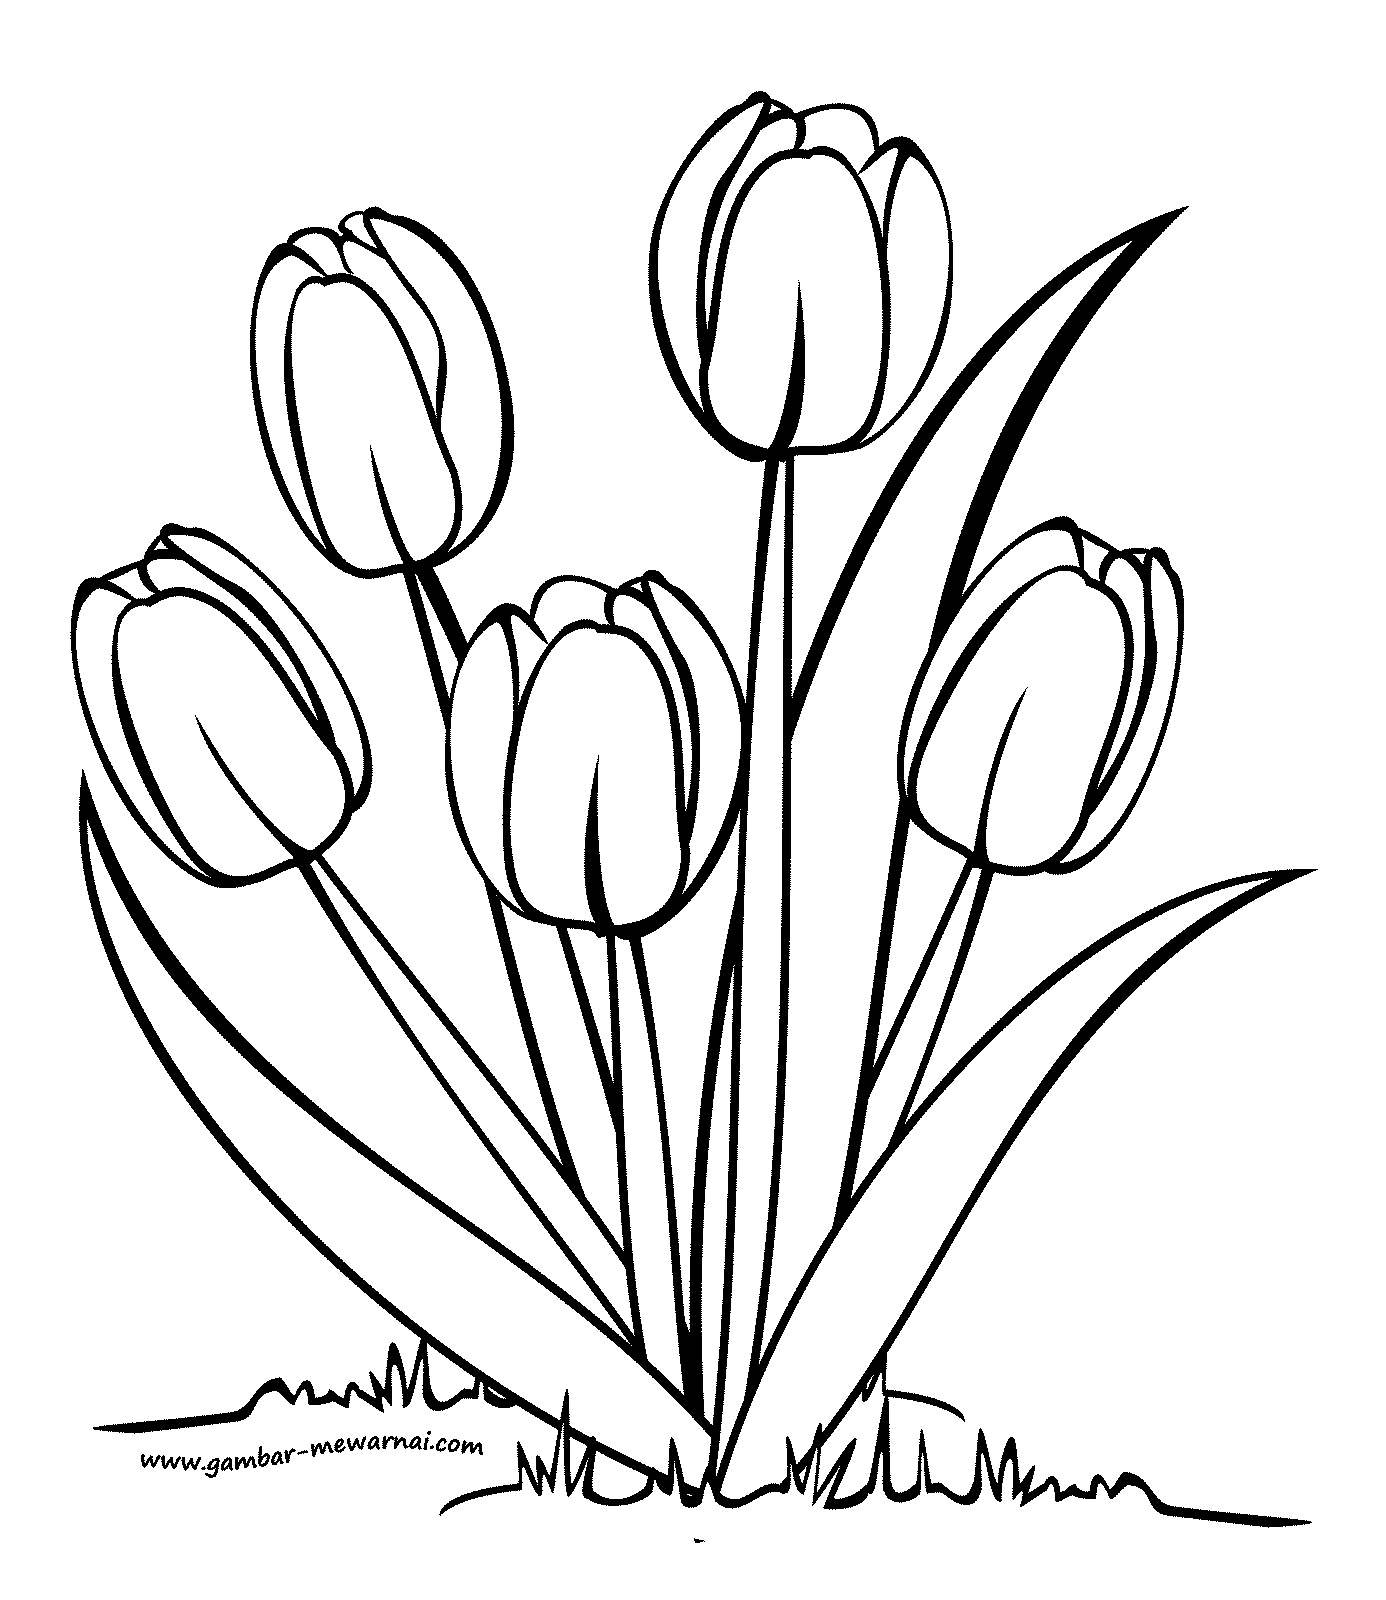 60 Paling Keren Gambar Bunga Tulip Untuk Mewarnai